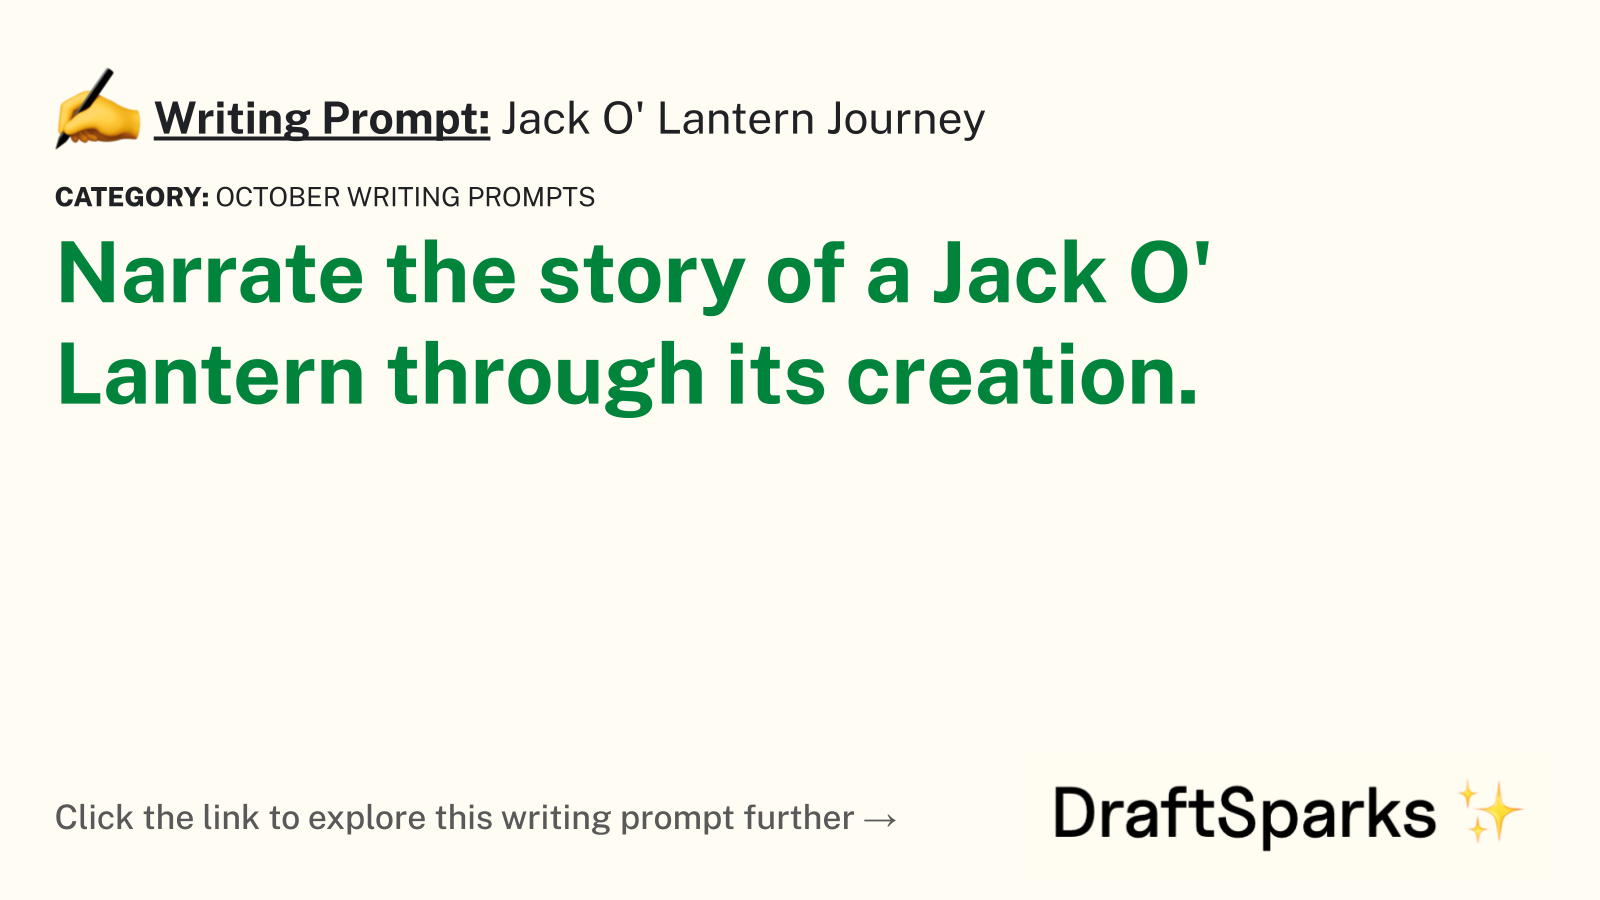 Jack O’ Lantern Journey